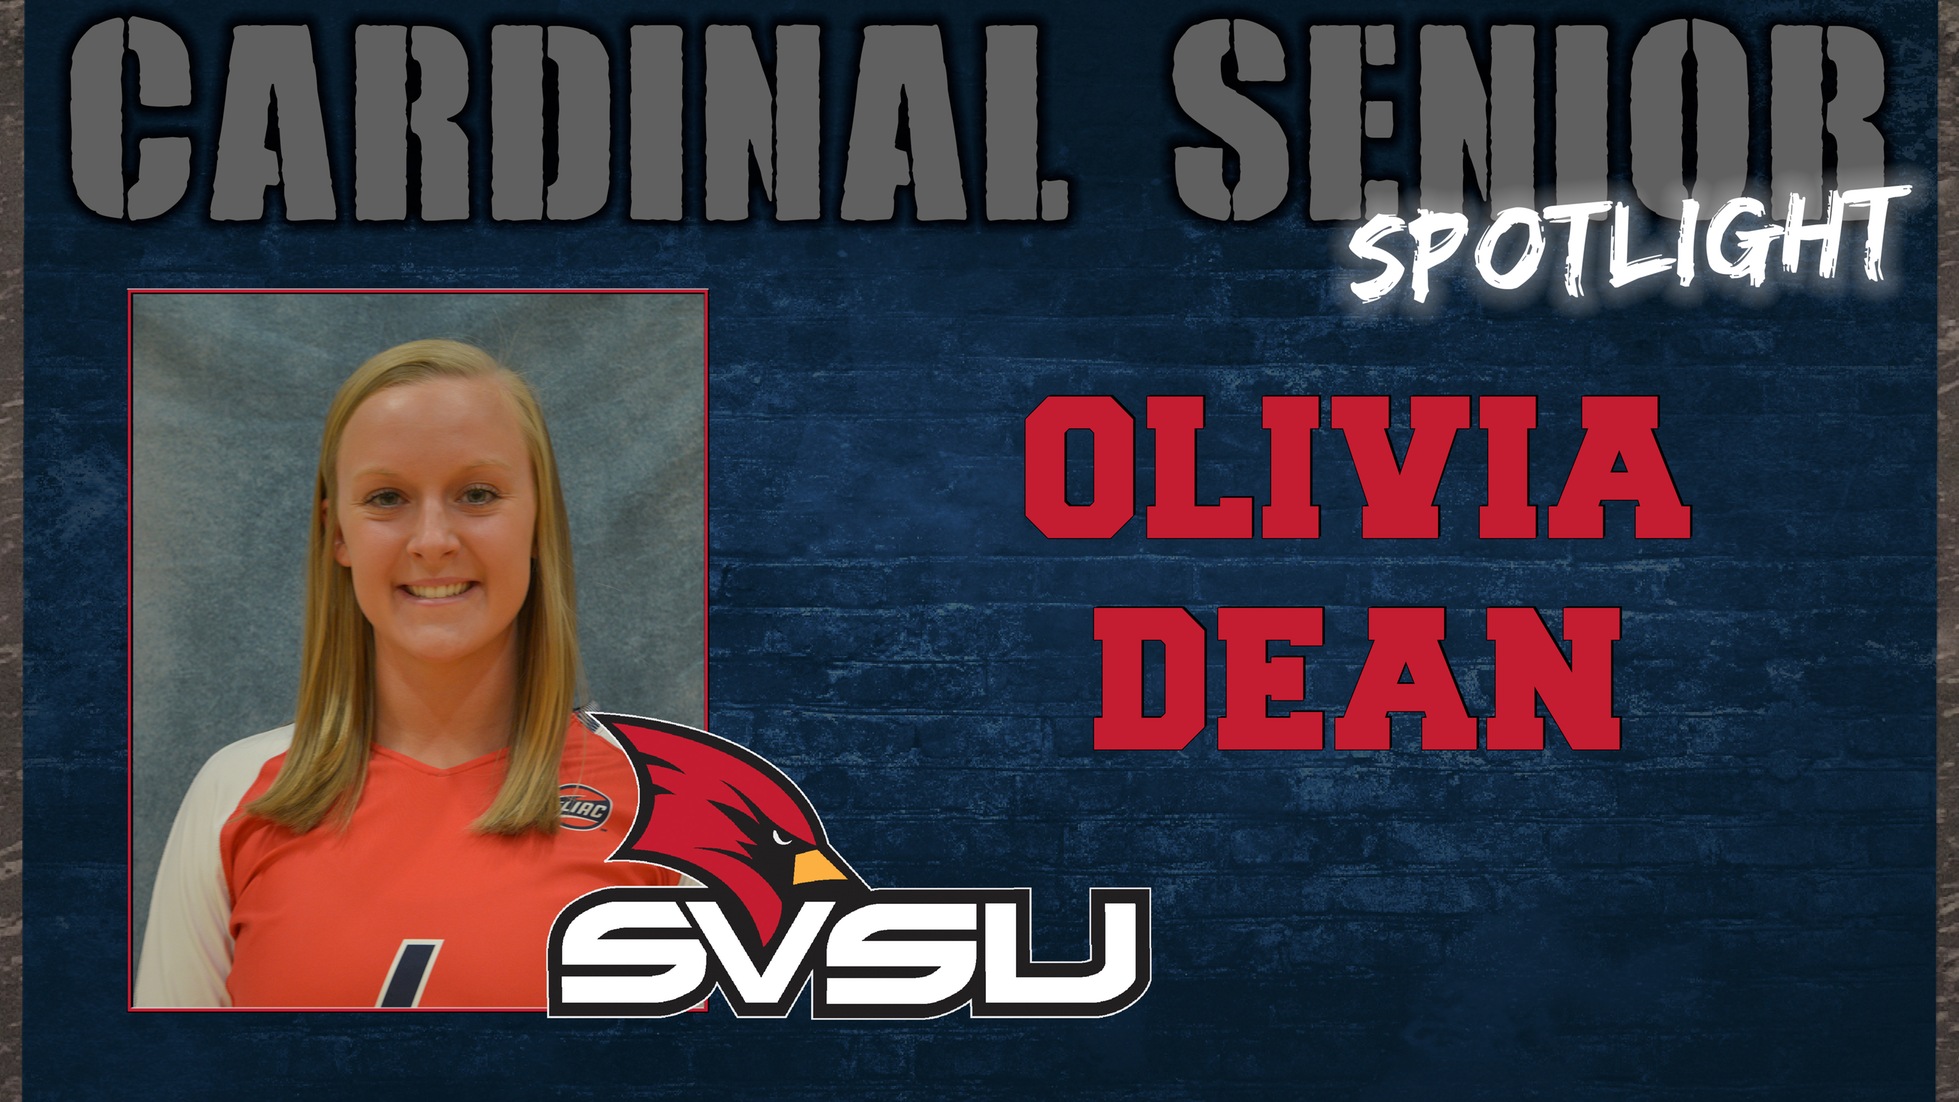 SVSU Cardinal Senior Spotlight - Olivia Dean